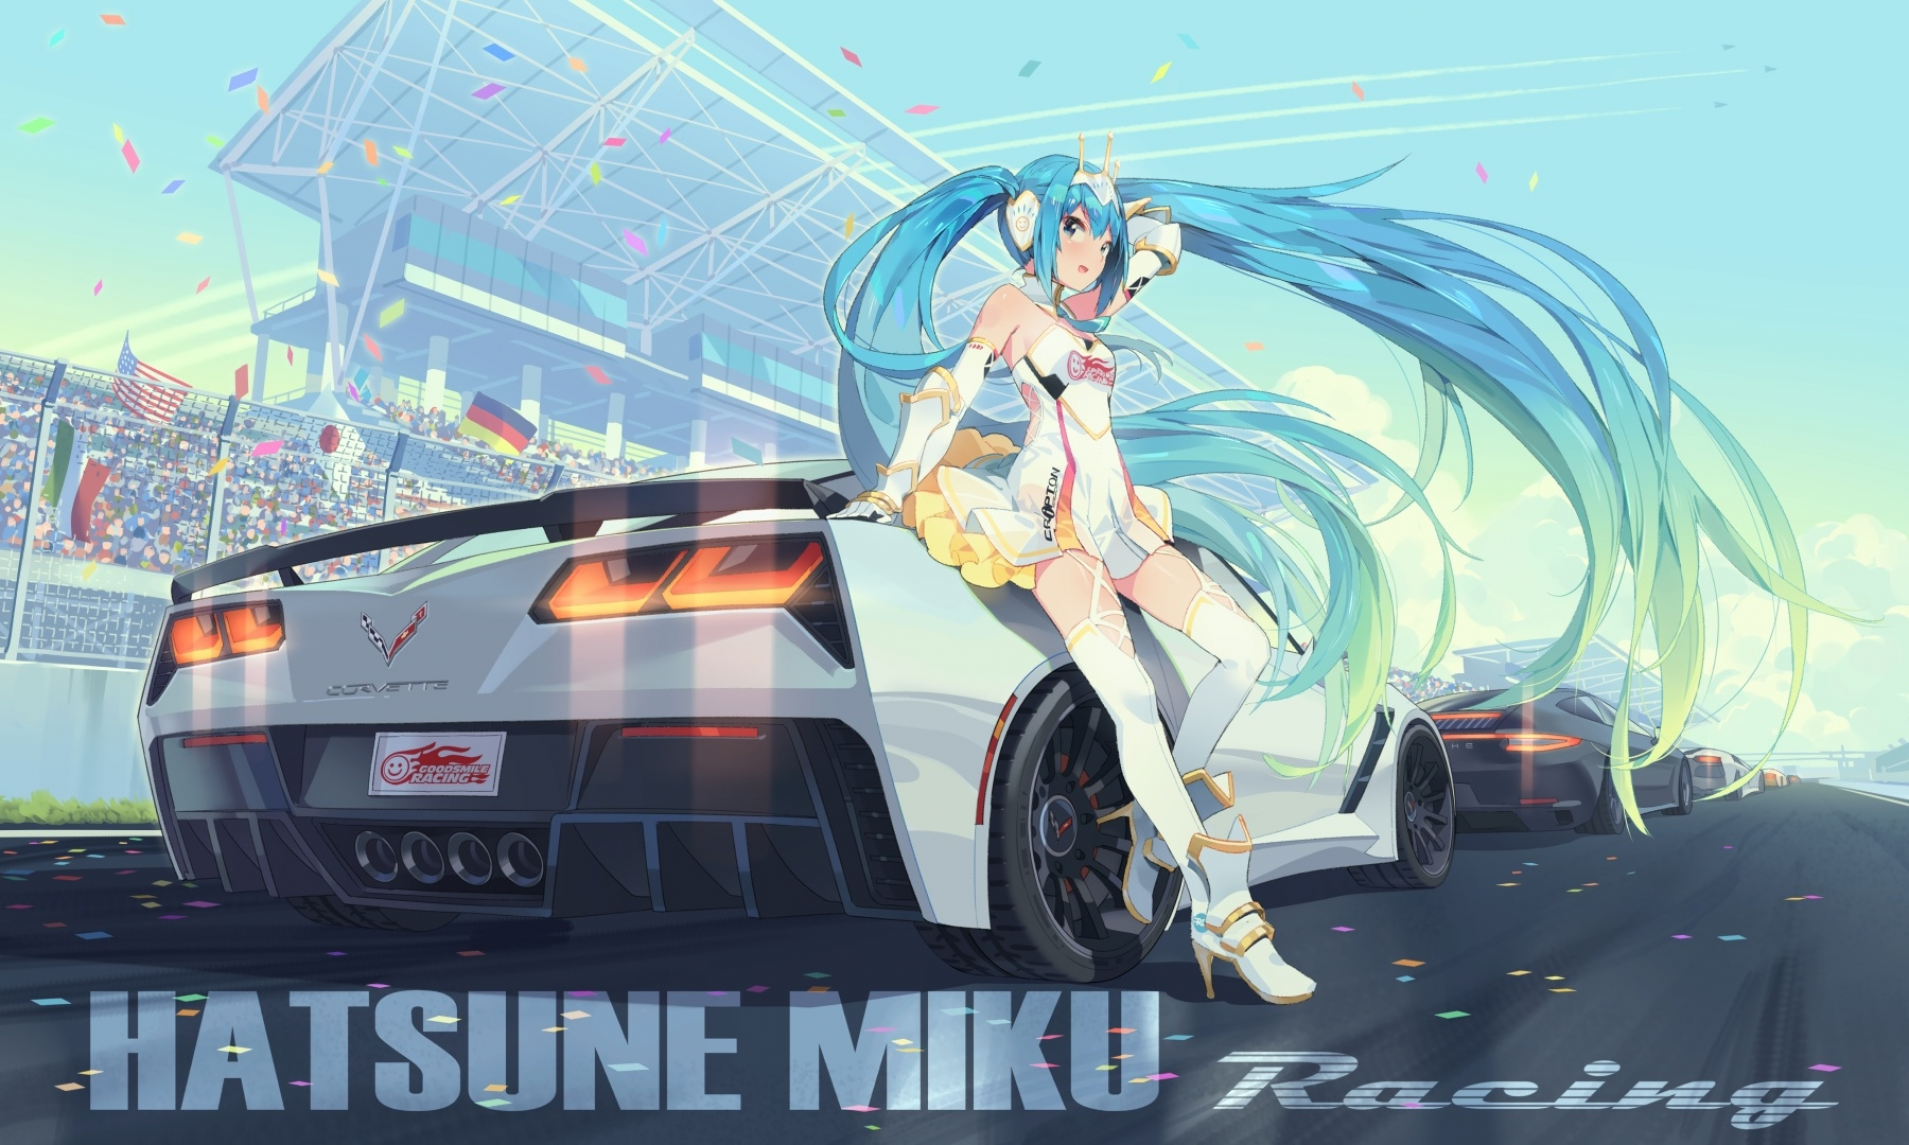 Hatsune Miku Car Goodsmile Racing Vocaloid Anime Girls Ddal Blue Hair Twintails Long Hair 1909x1145